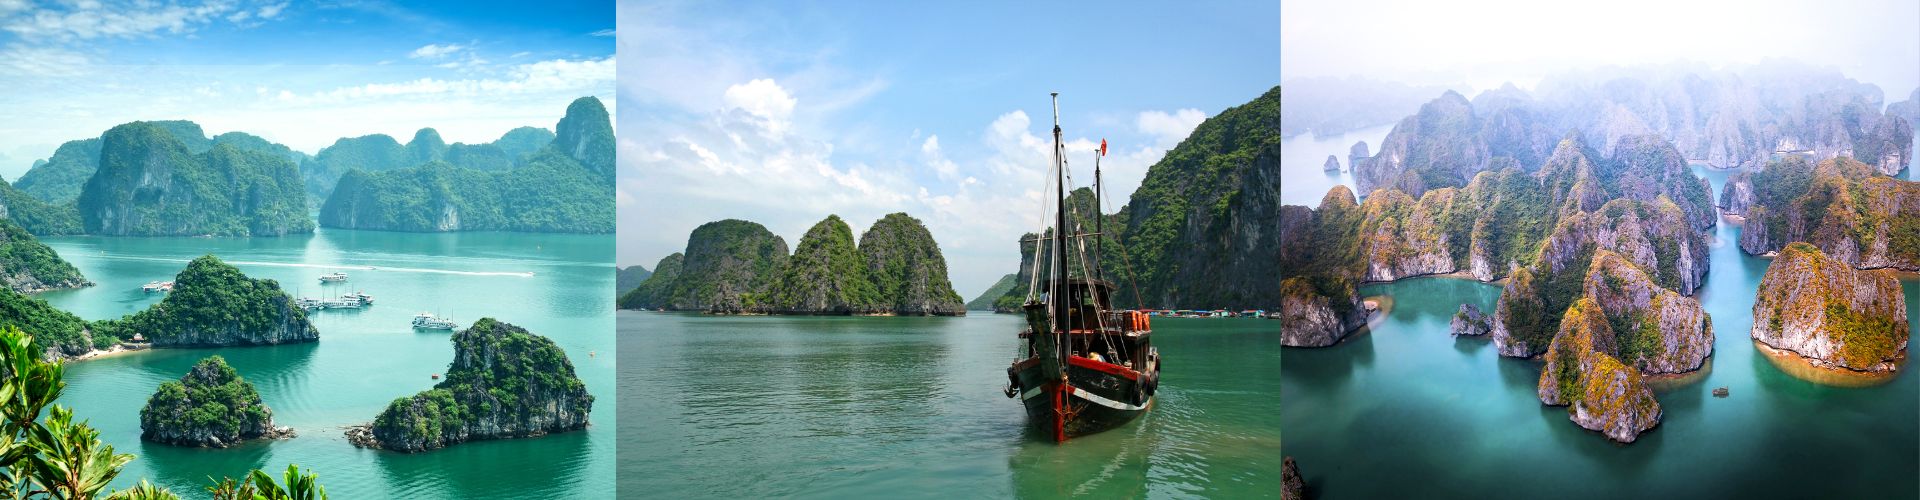 Halong zaliv krstarenje Vijetnam